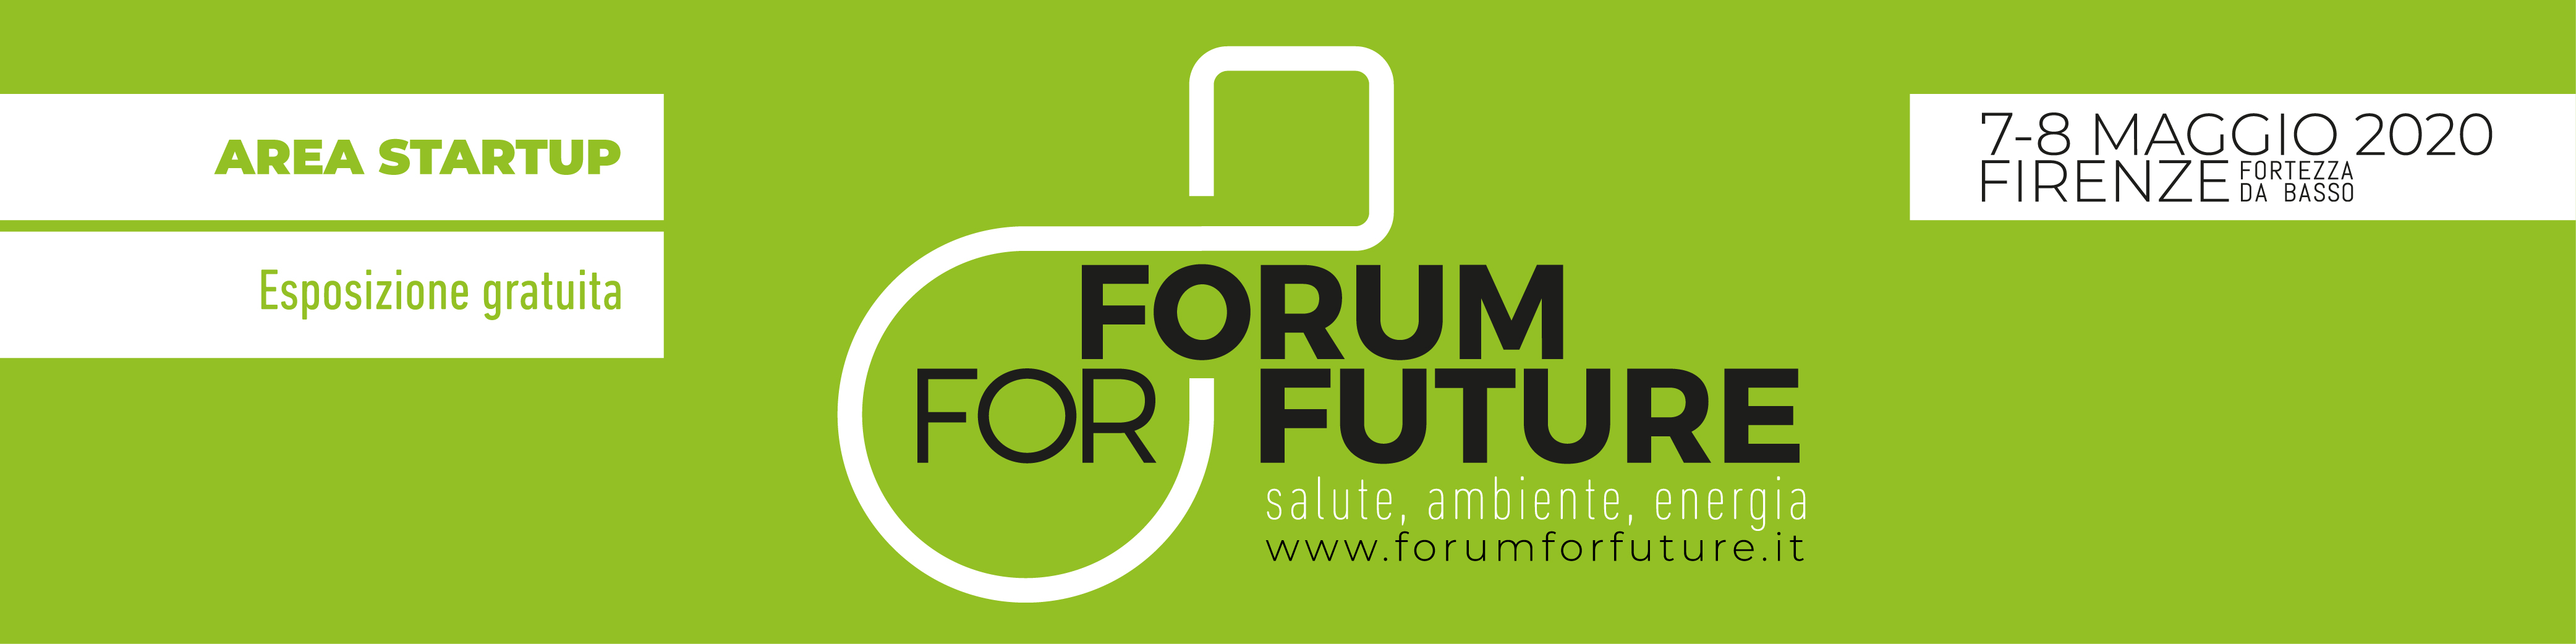 Esposizione gratuita per 20 Startup al Forum for Future – 7 e 8 Maggio 2020, Fortezza da Basso a Firenze